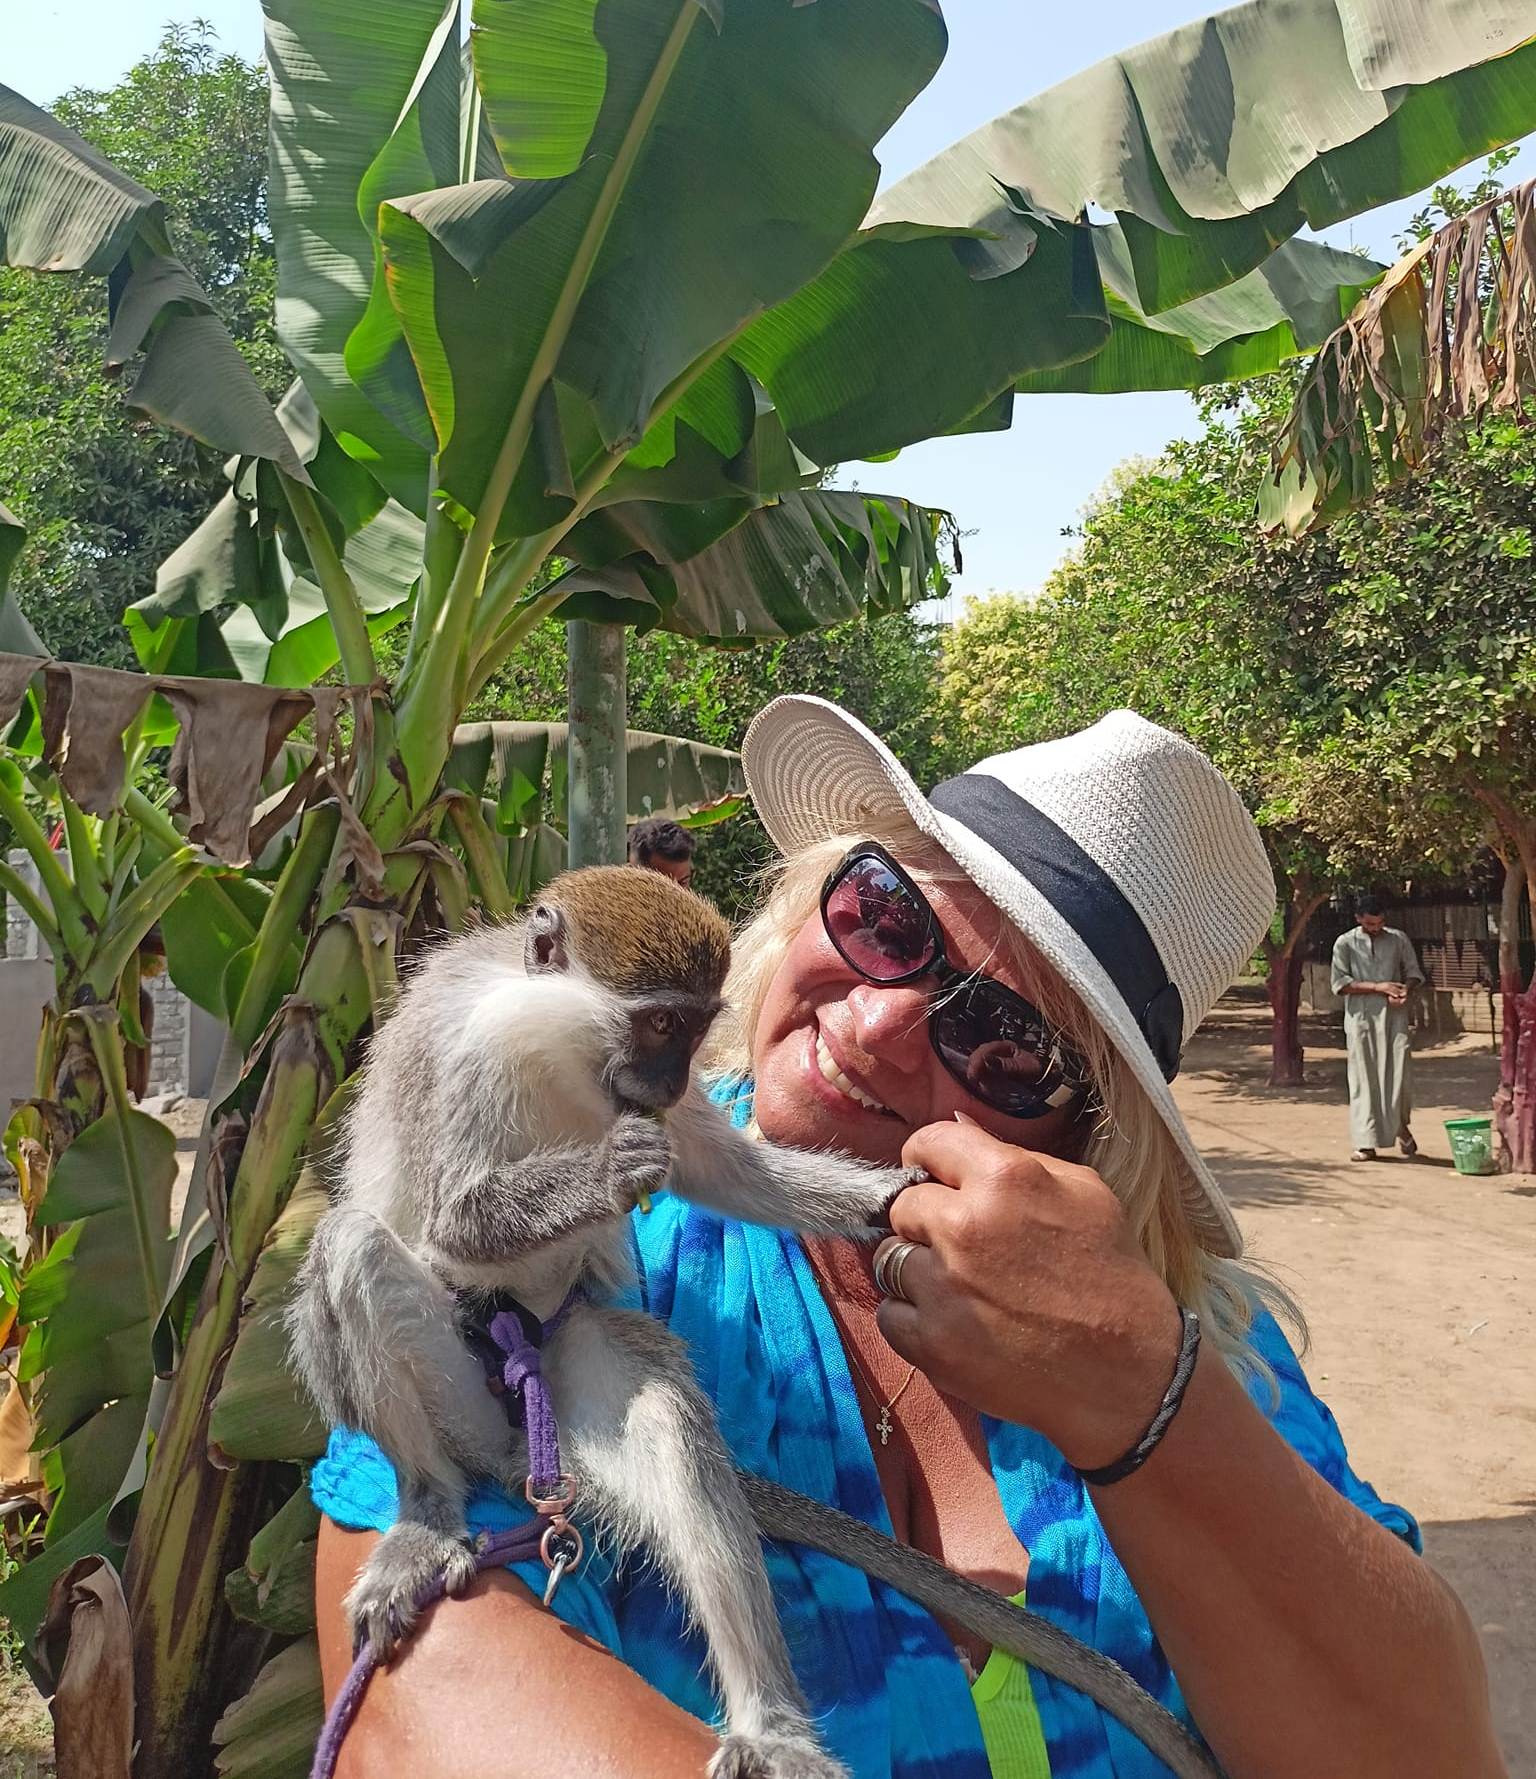 فرحة السياح باللهو مع القرود فى جزيرة الموز